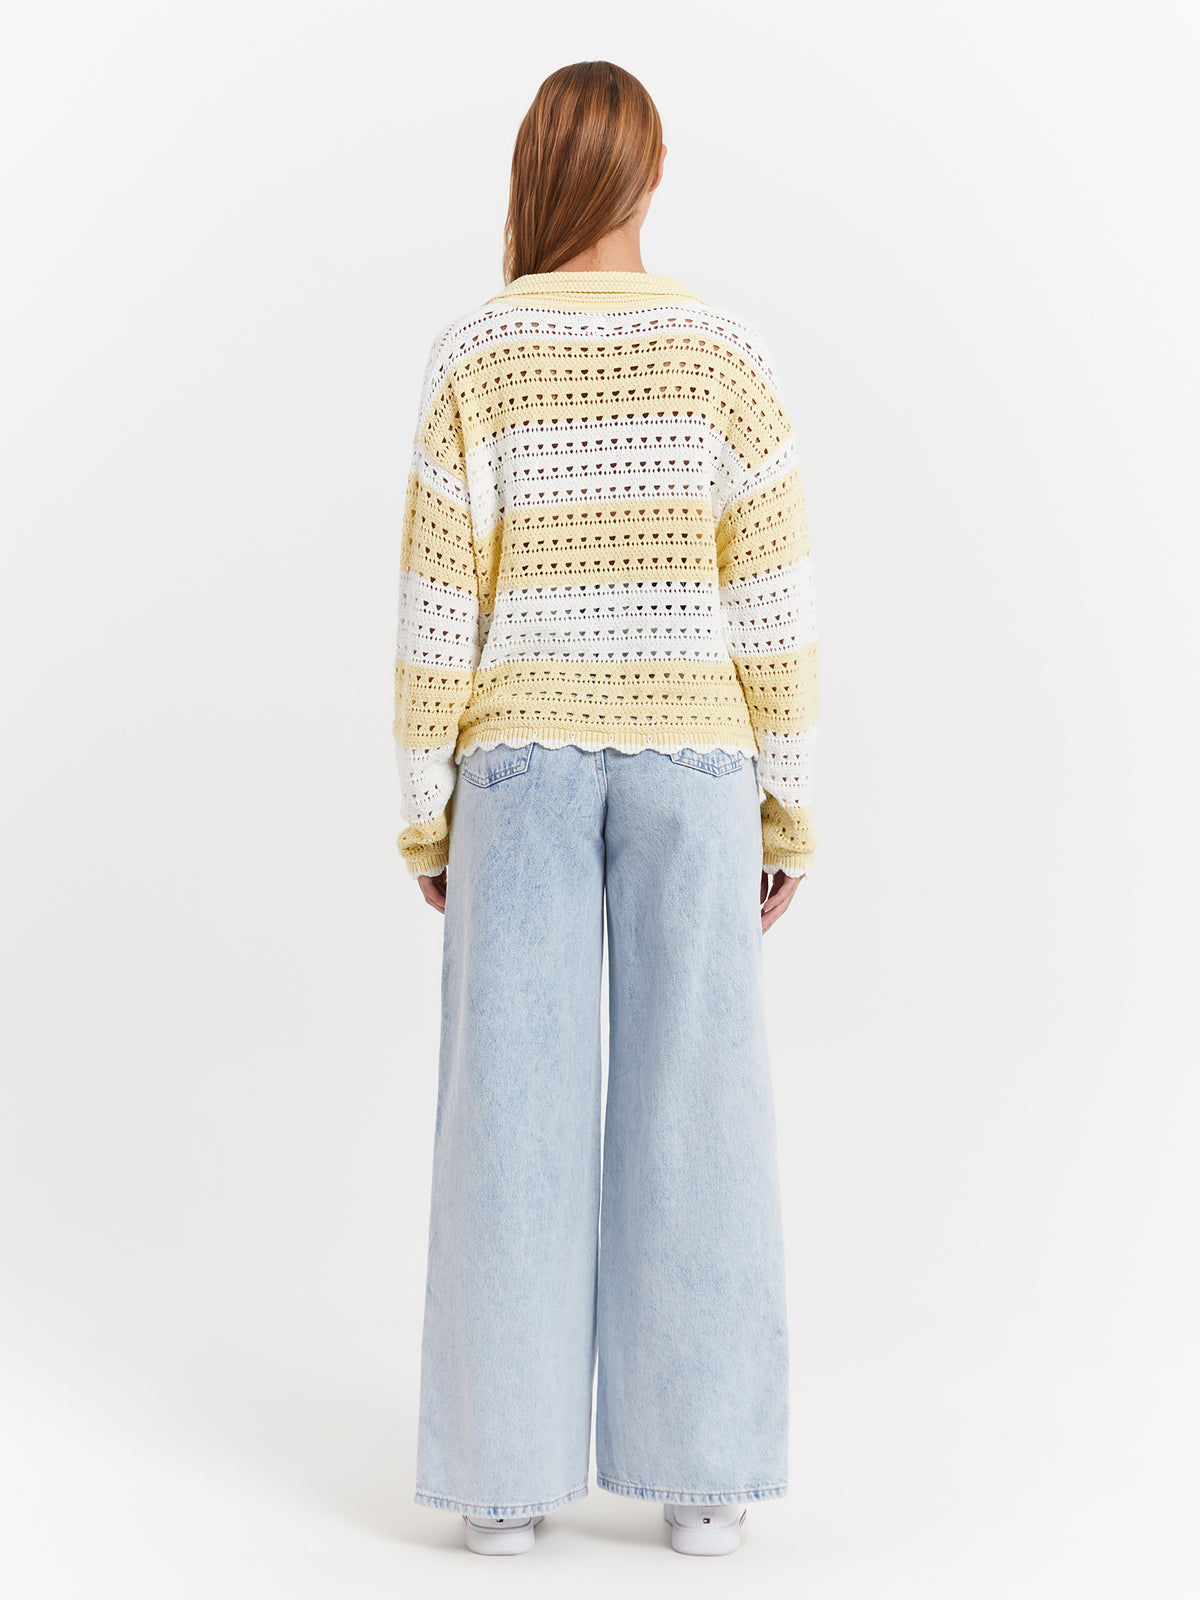 Summer Crochet Sweater in Lemon Zest &amp; White